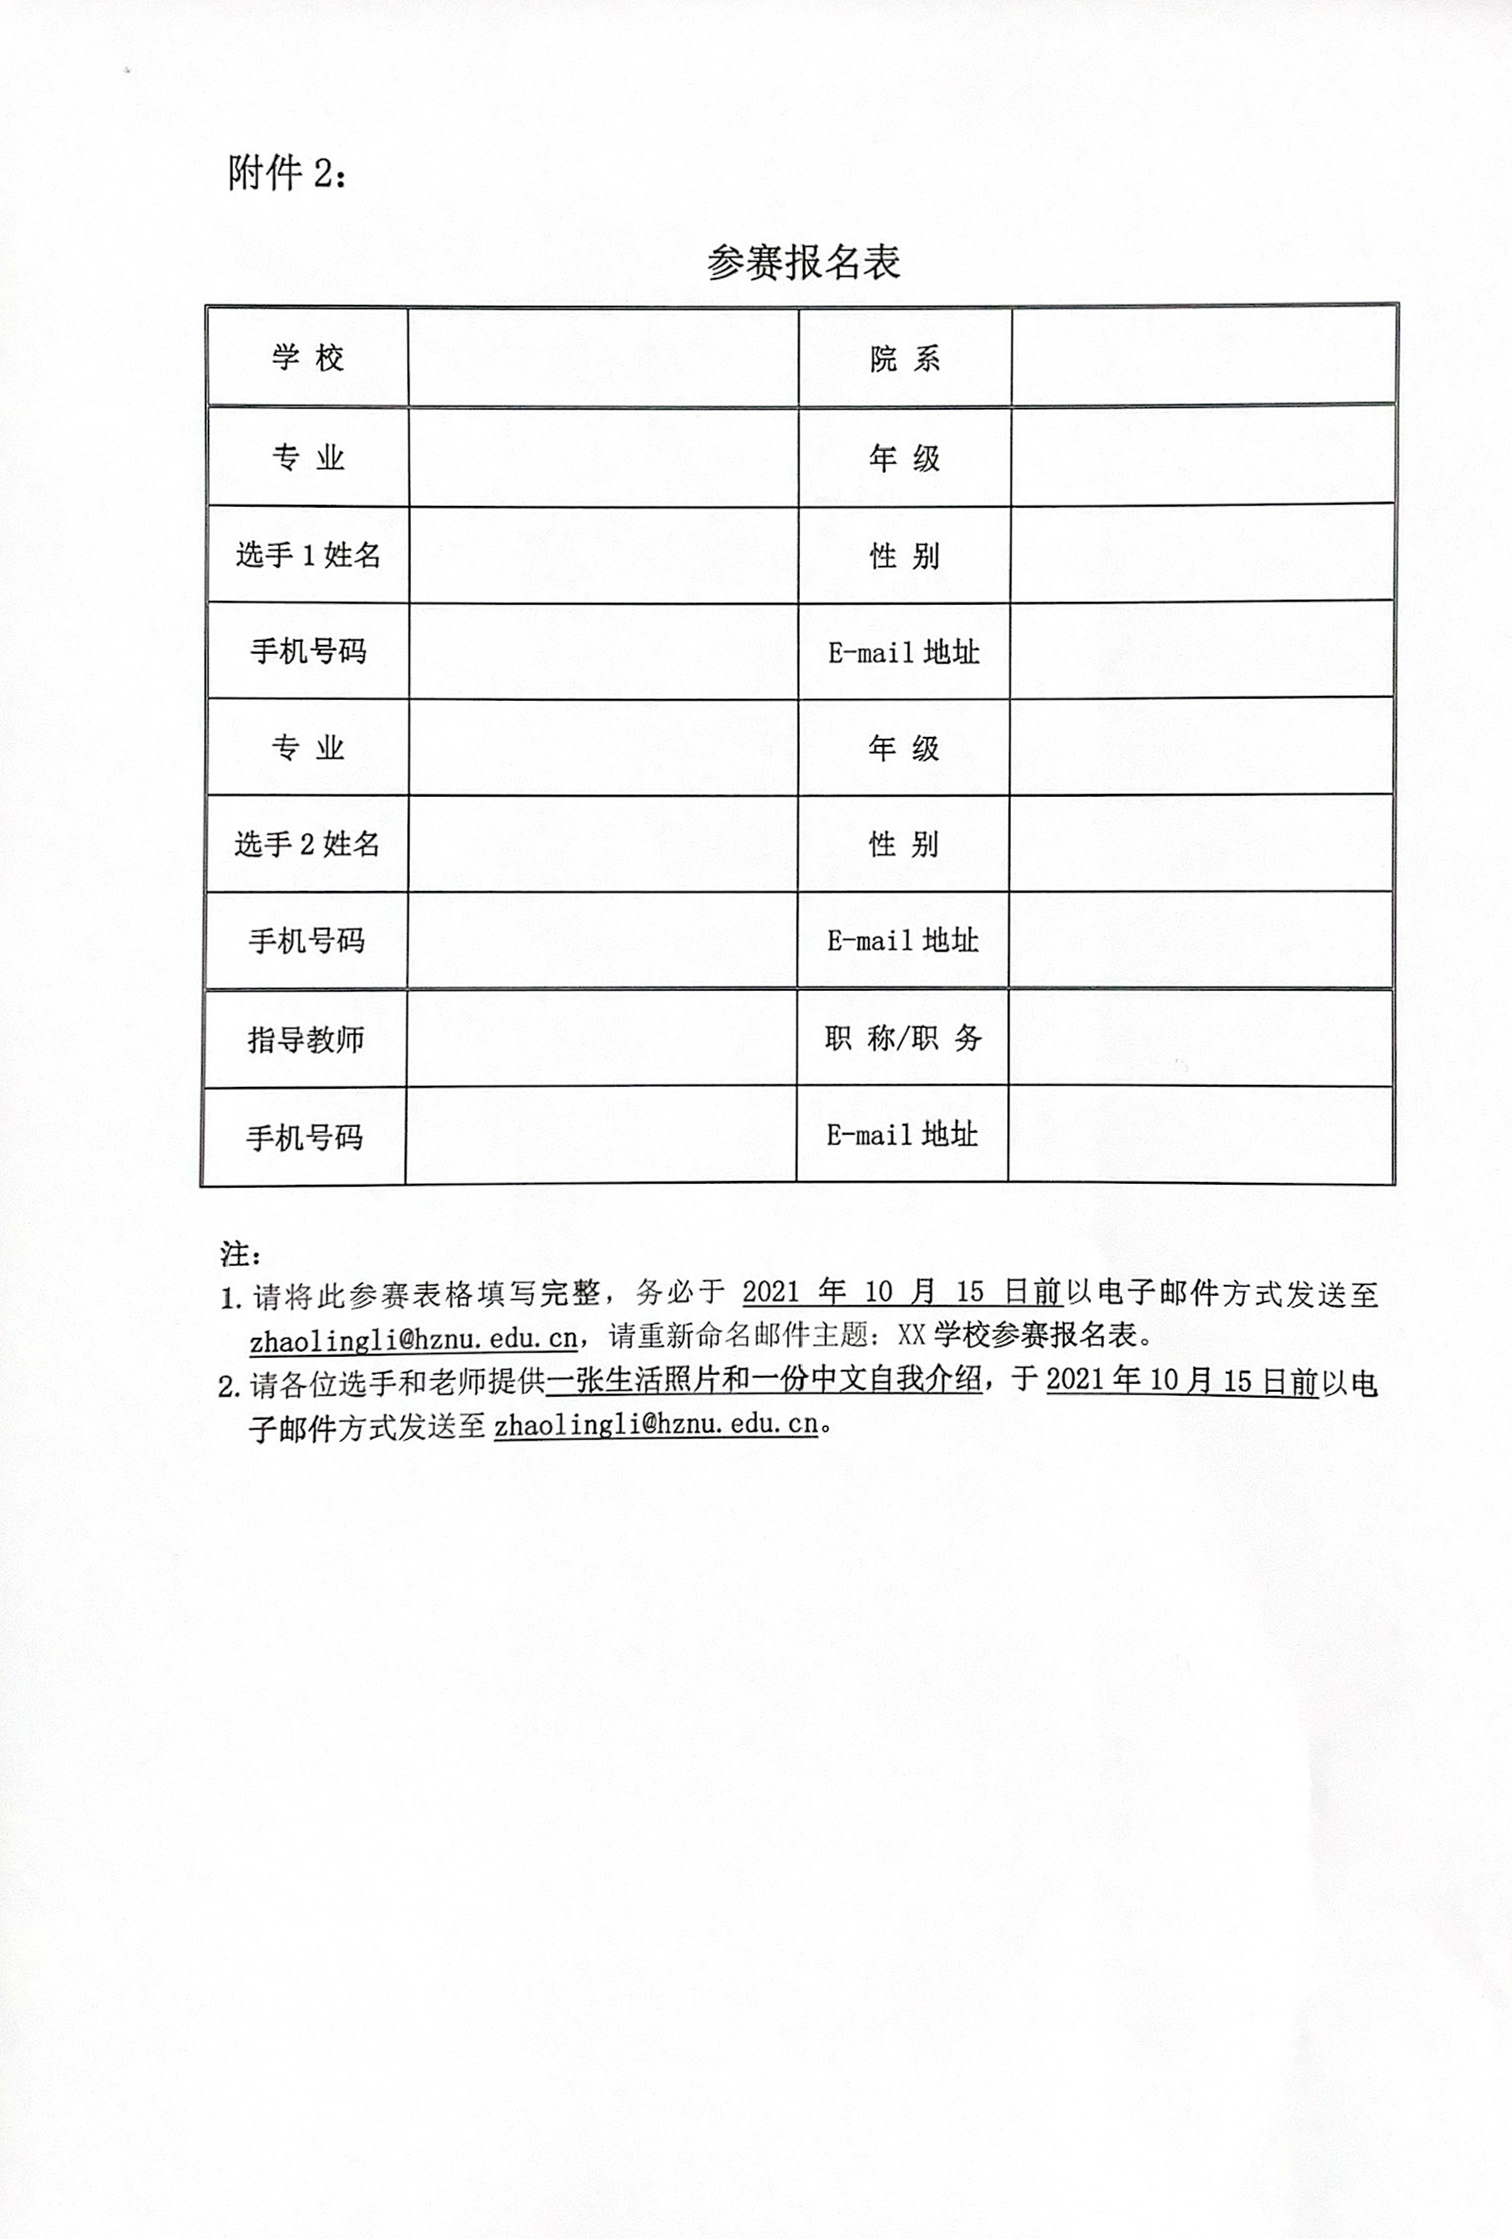 第四届中国高校外语学科发展联盟师范类院校英语师范生素质风采展示活动邀请函_页面_3.jpg